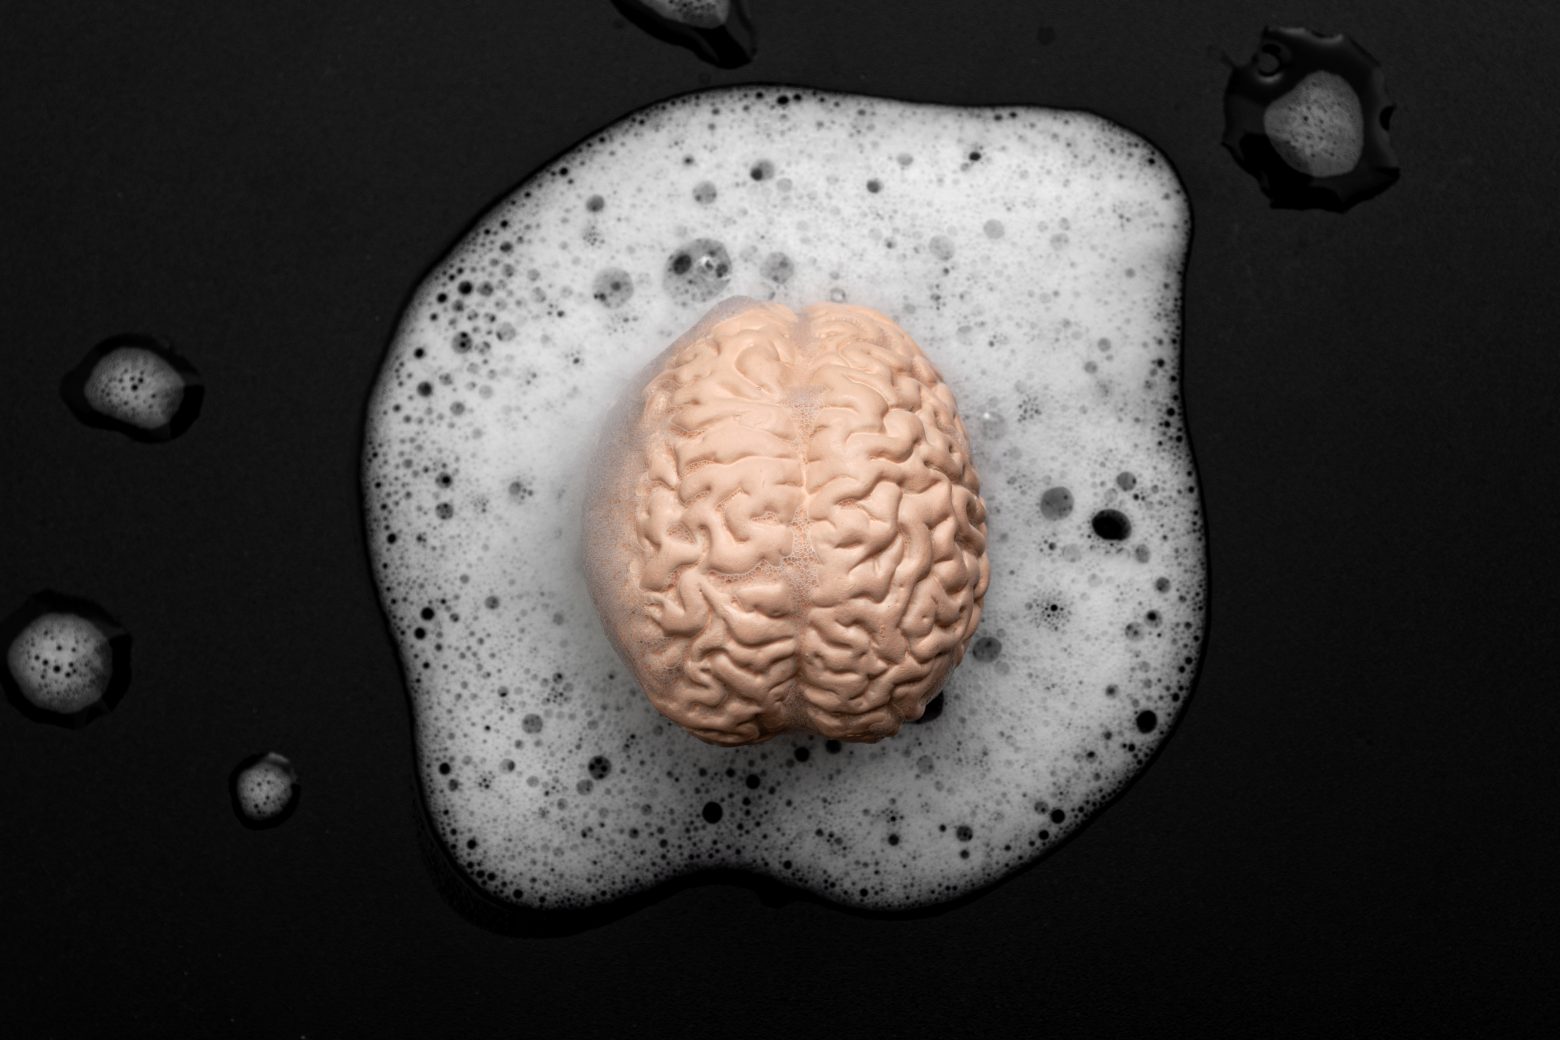 Vymývanie mozgu, nižšie kritické myslenie a koncept kontroly mysle s ľudským vymývaním mozgu v mydlových bublinách izolovaných na čiernom pozadí